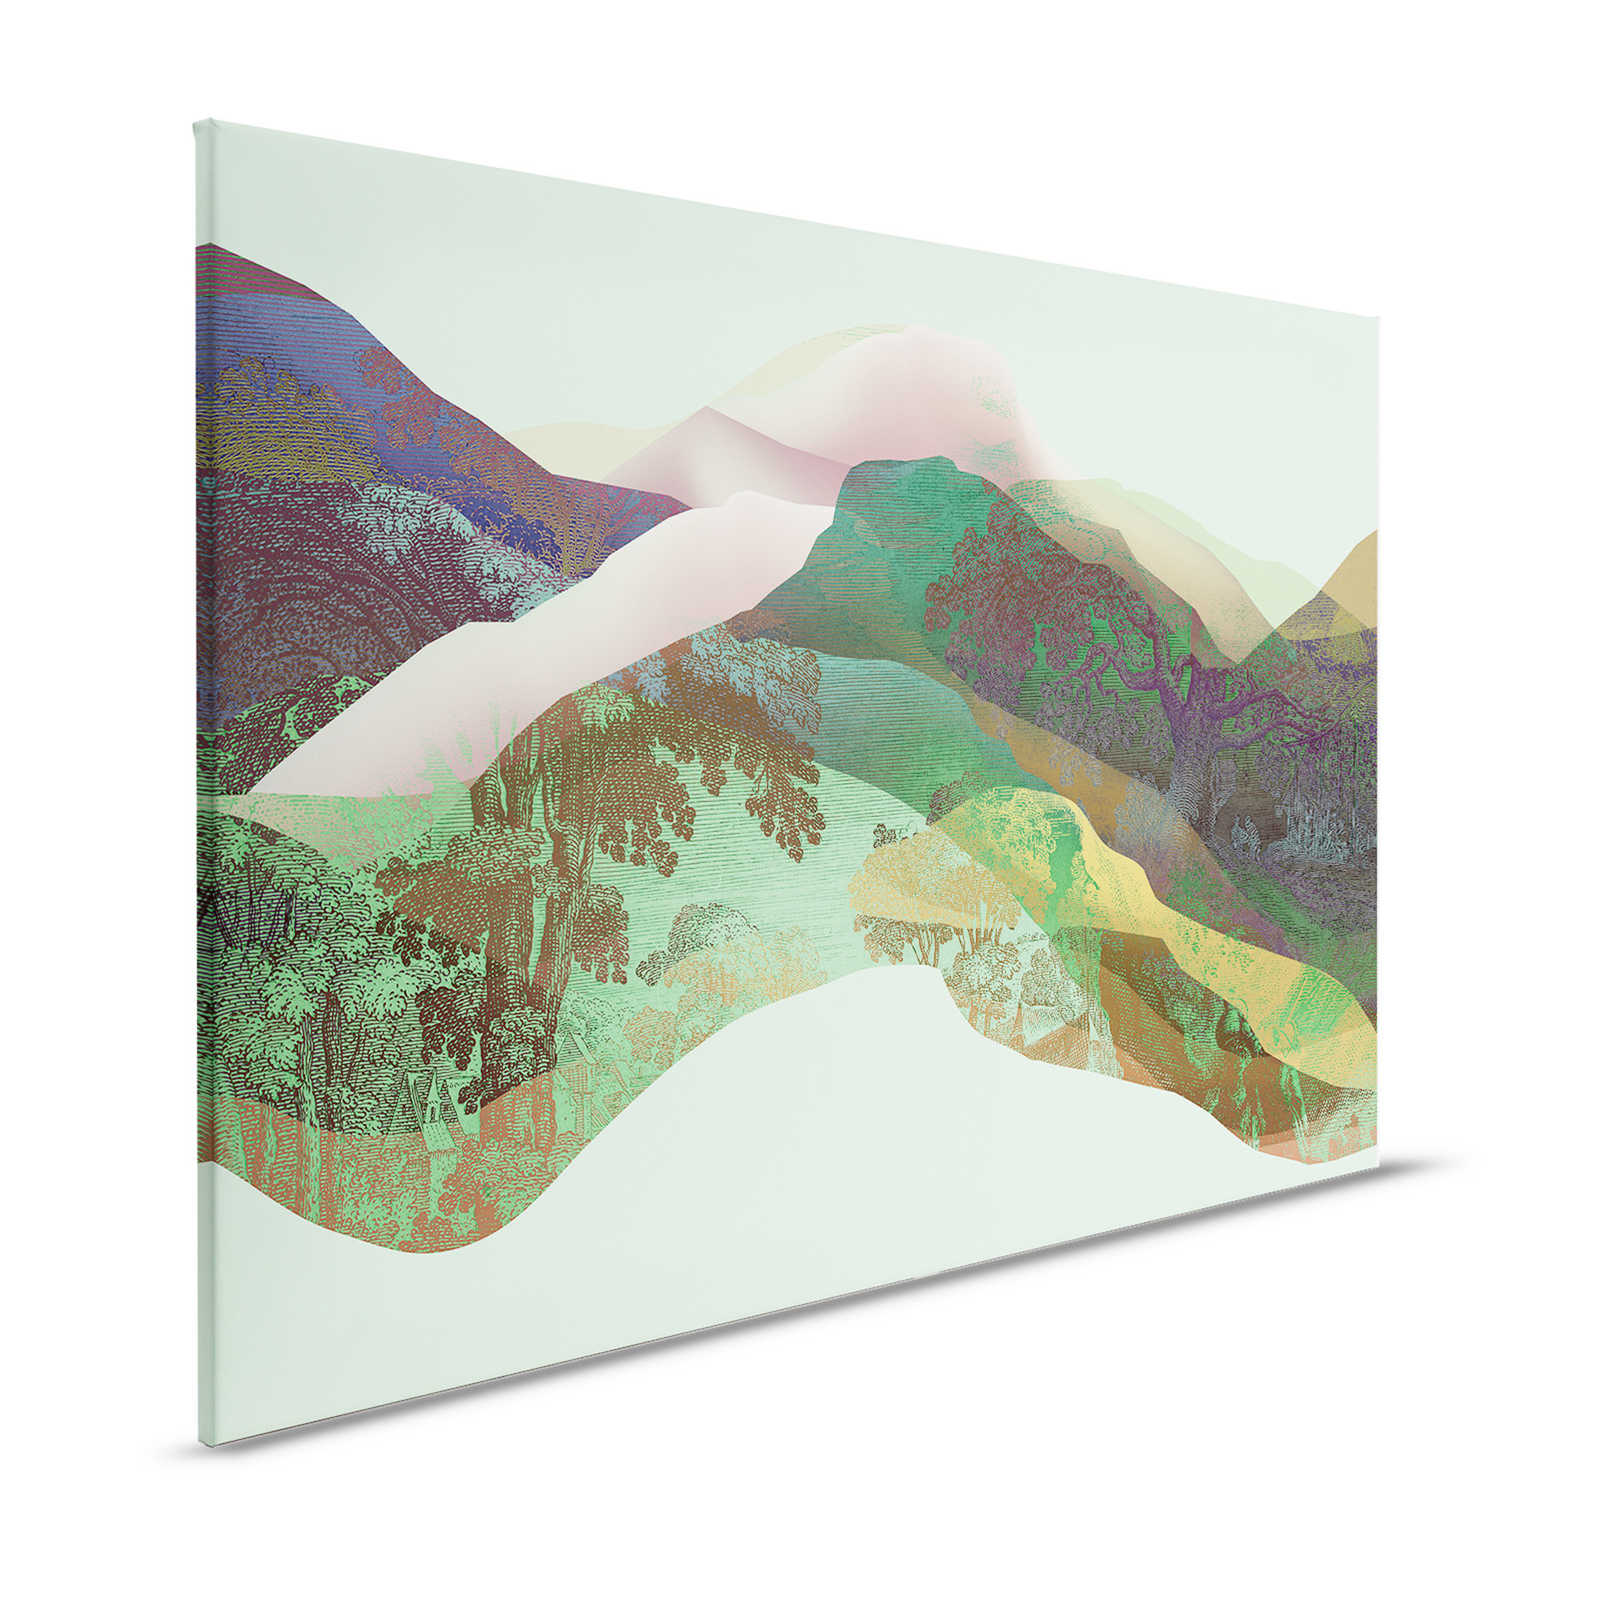 Magic Mountain 3 - Lienzo montañas verdes diseño moderno - 1,20 m x 0,80 m
